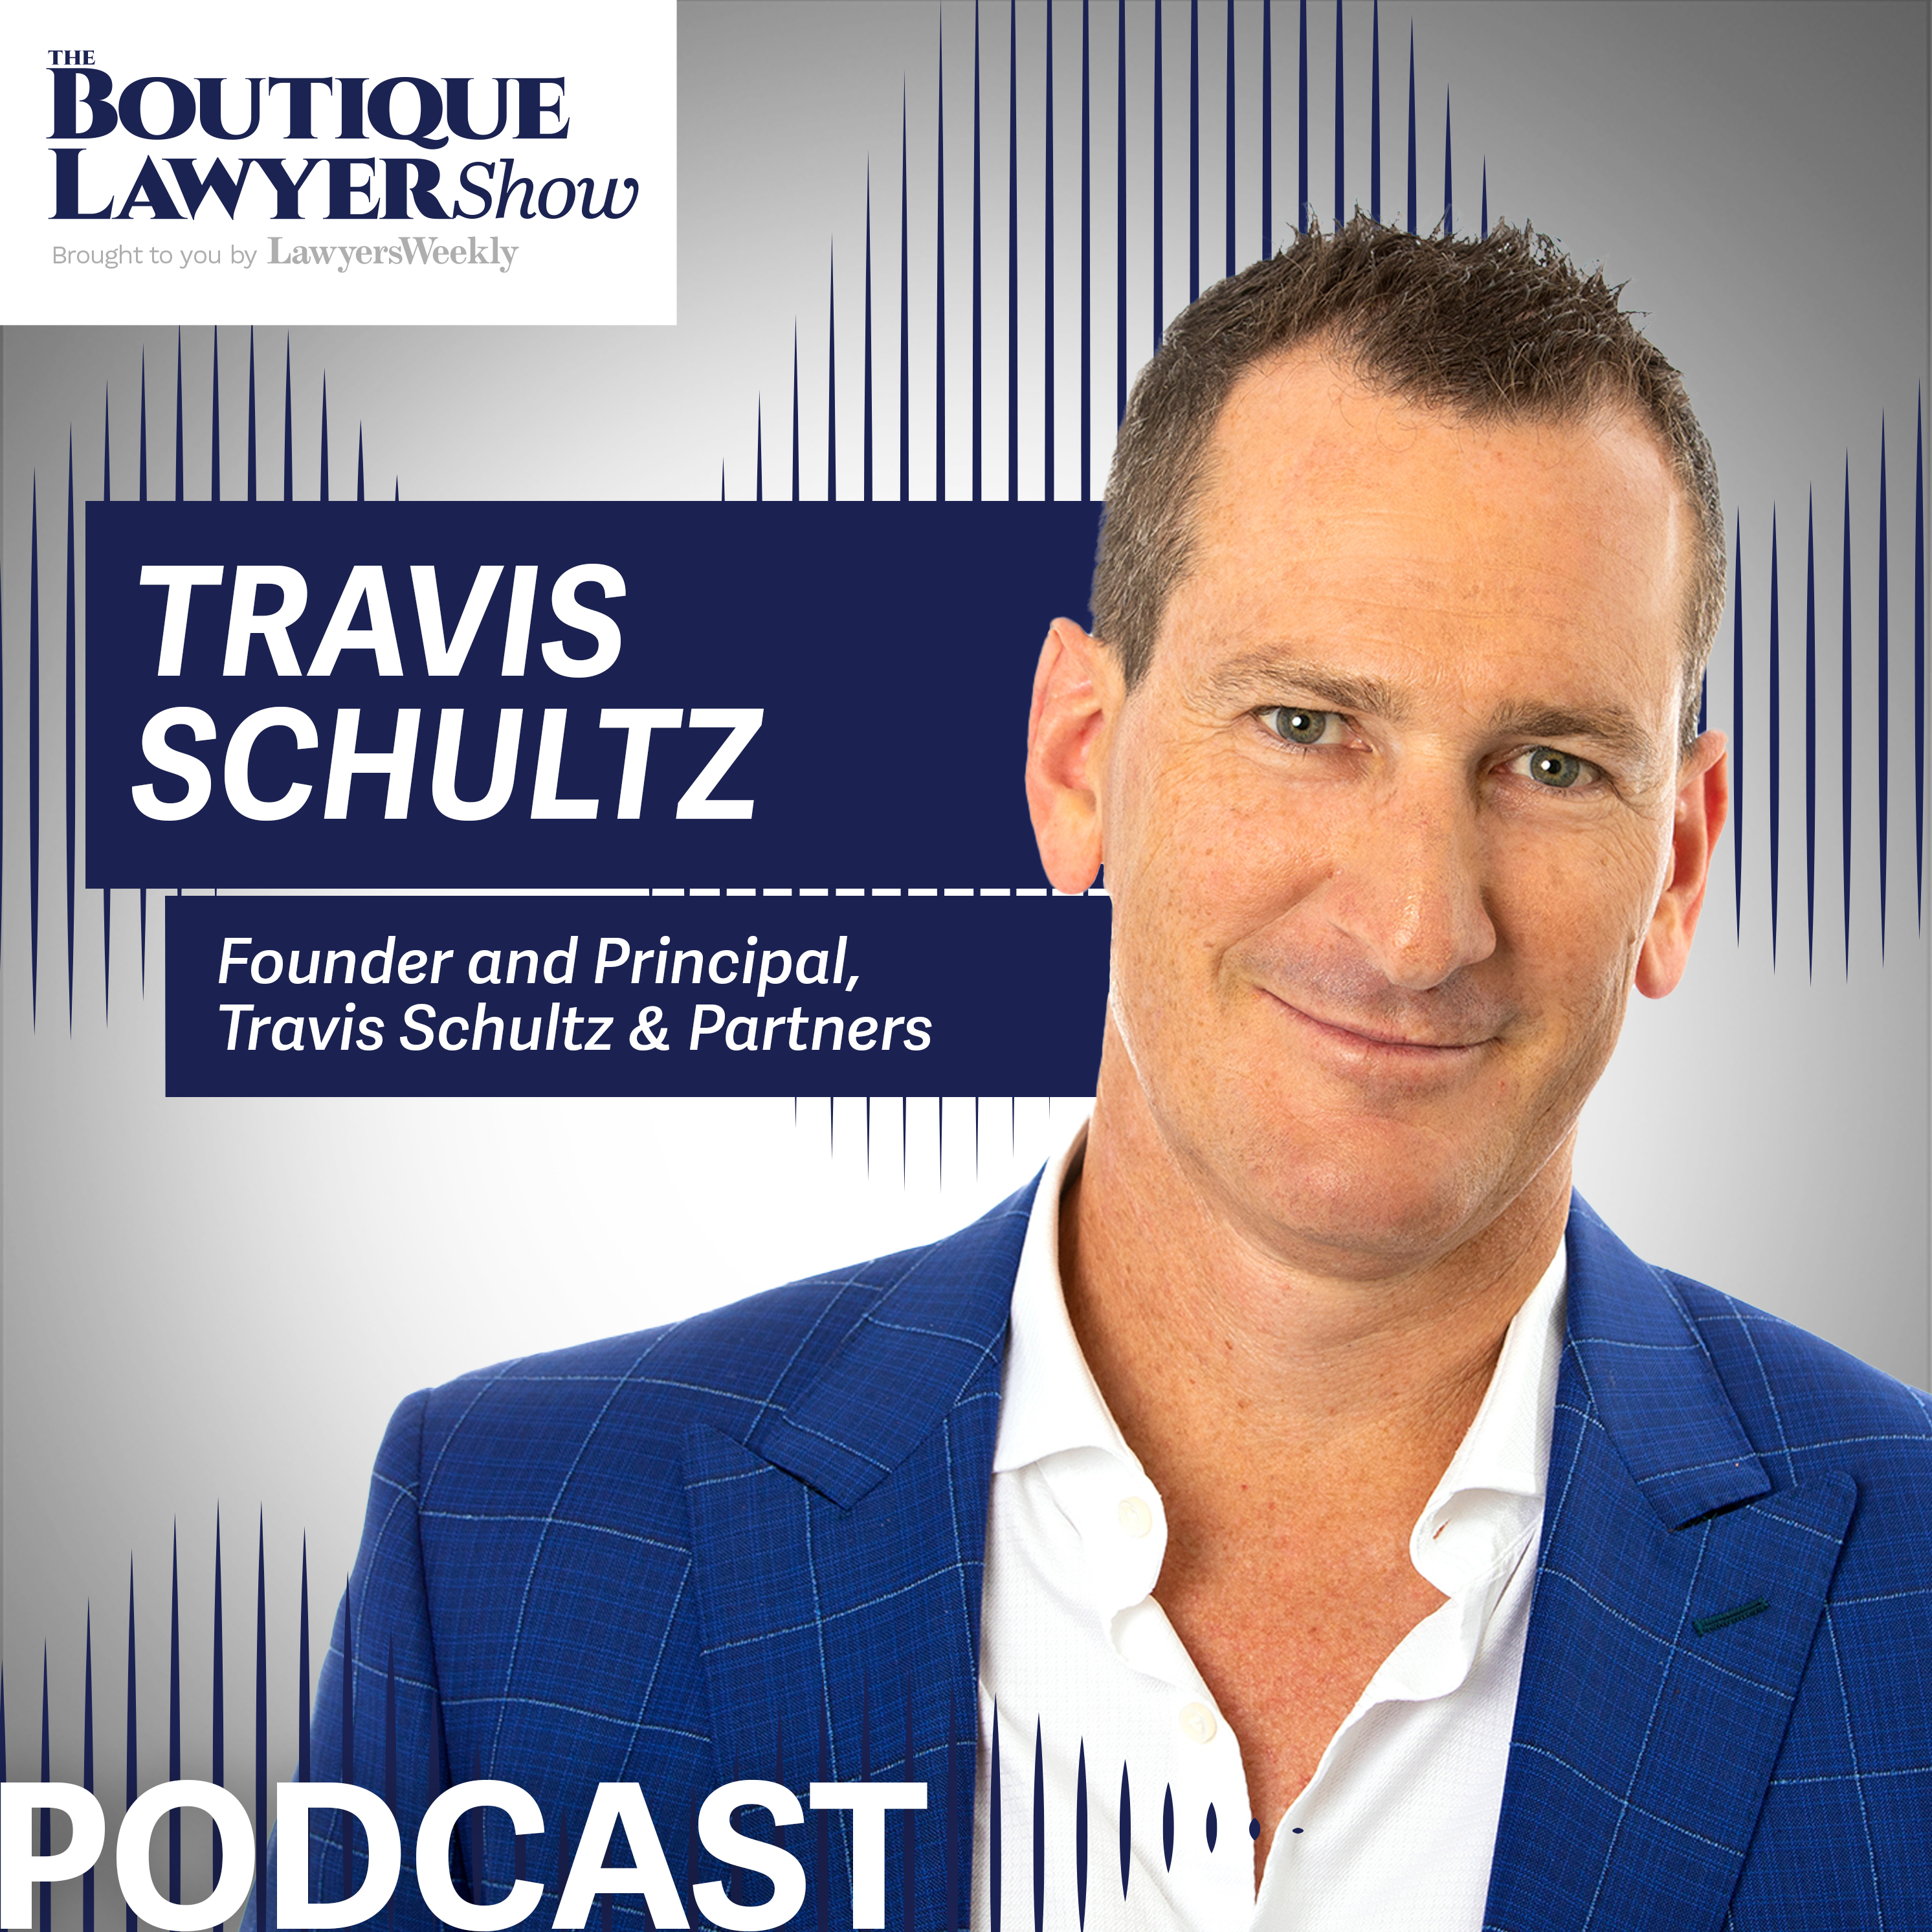 Travis Schultz Lawyers Weekly Podcast